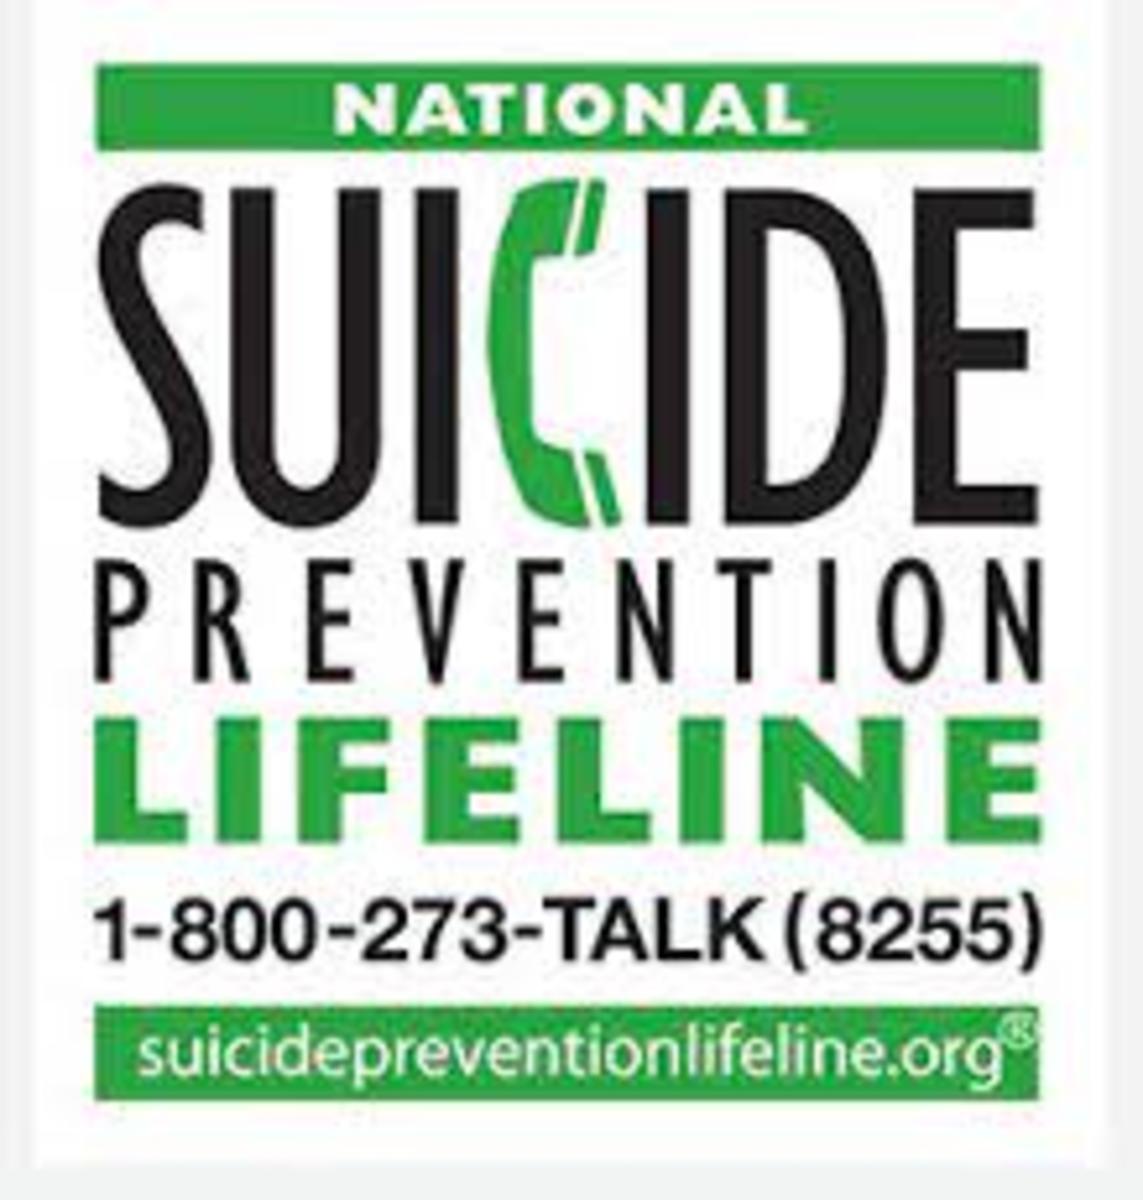 Shree Saini suicide prevention